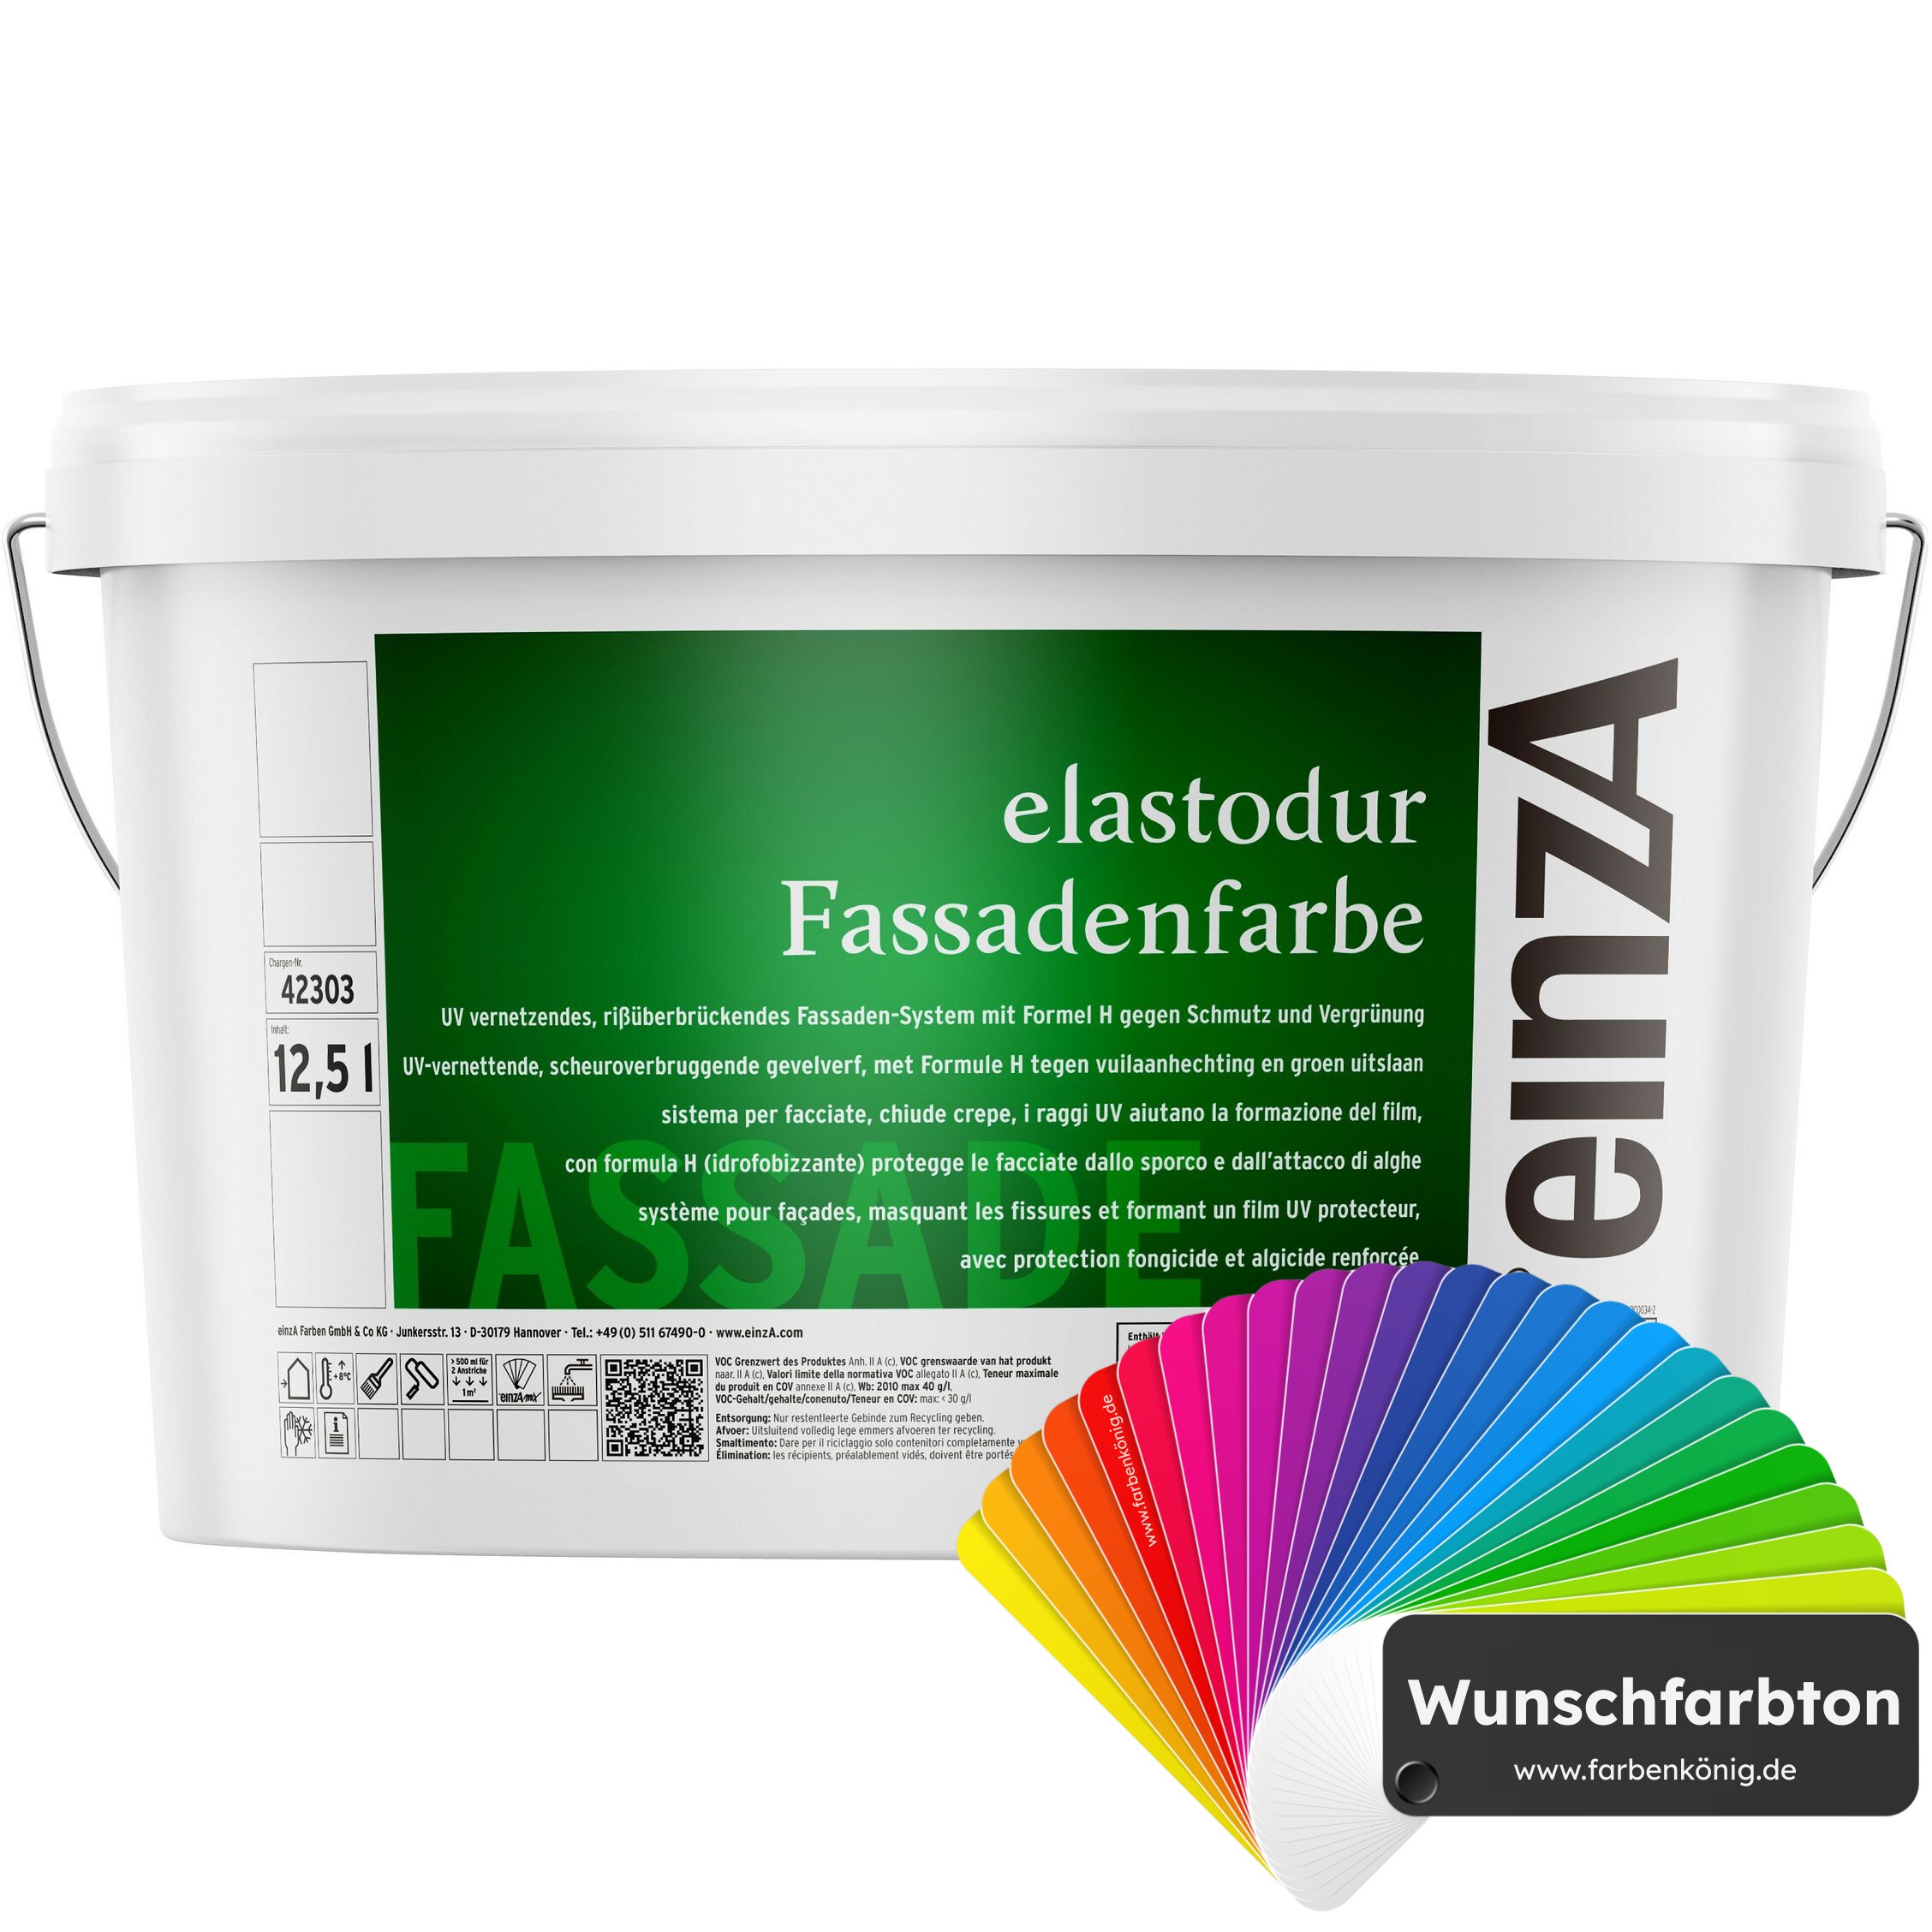 einzA einzA elastodur Fassadenfarbe (Wunschfarbton) online kaufen